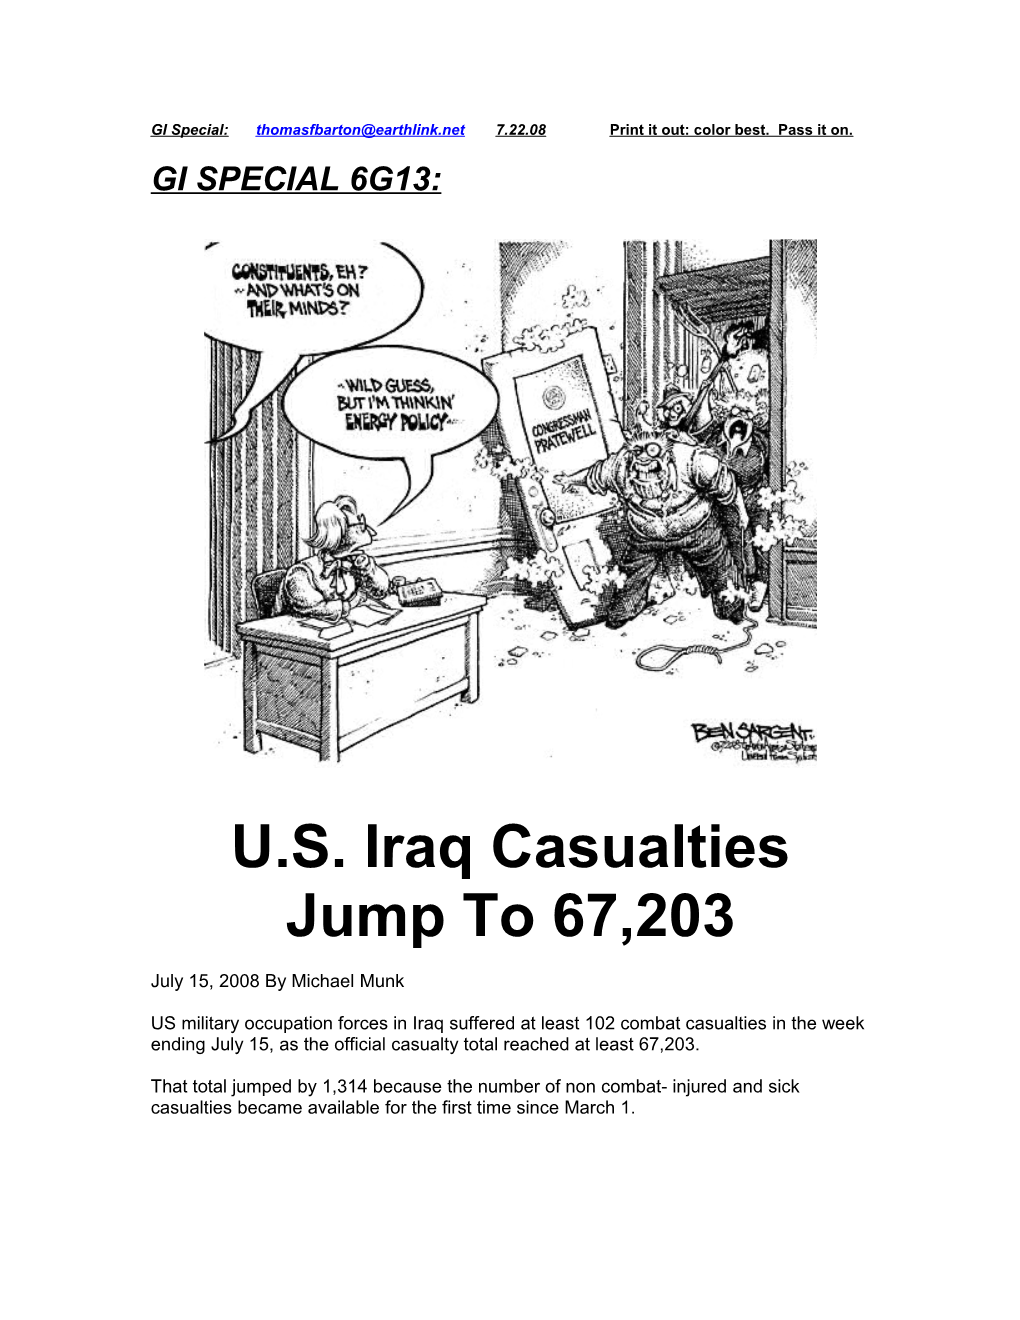 U.S. Iraq Casualties Jump to 67,203